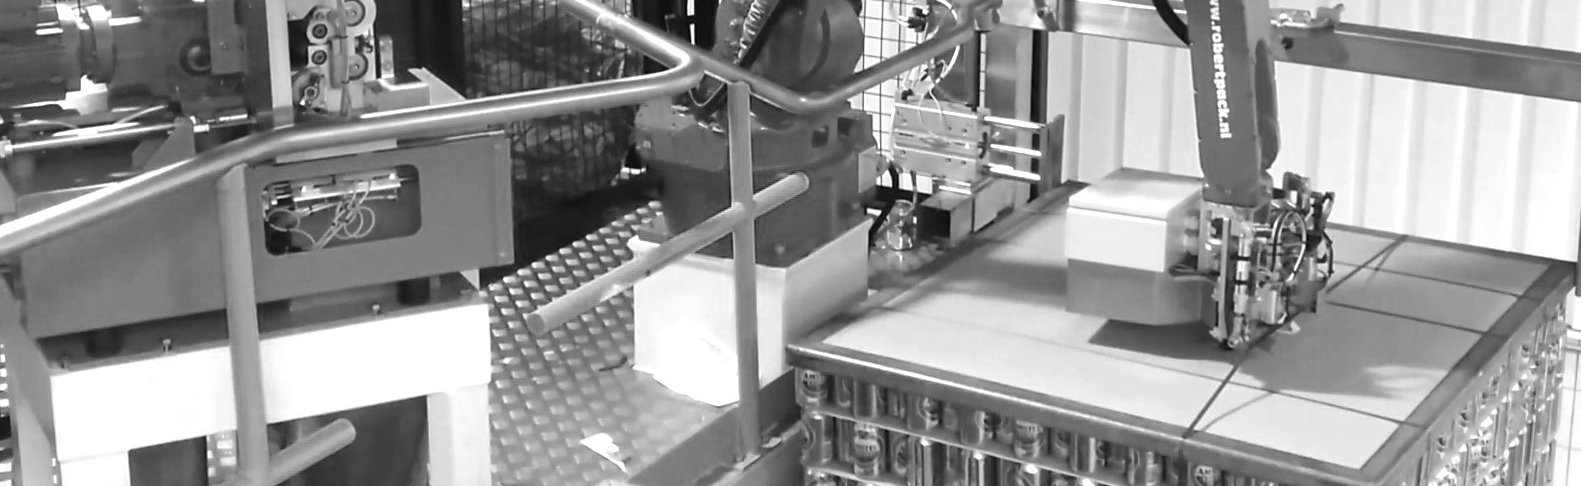 debander-robot-voor-de-drankenindustrie-van-robertpack-uit-zwolle